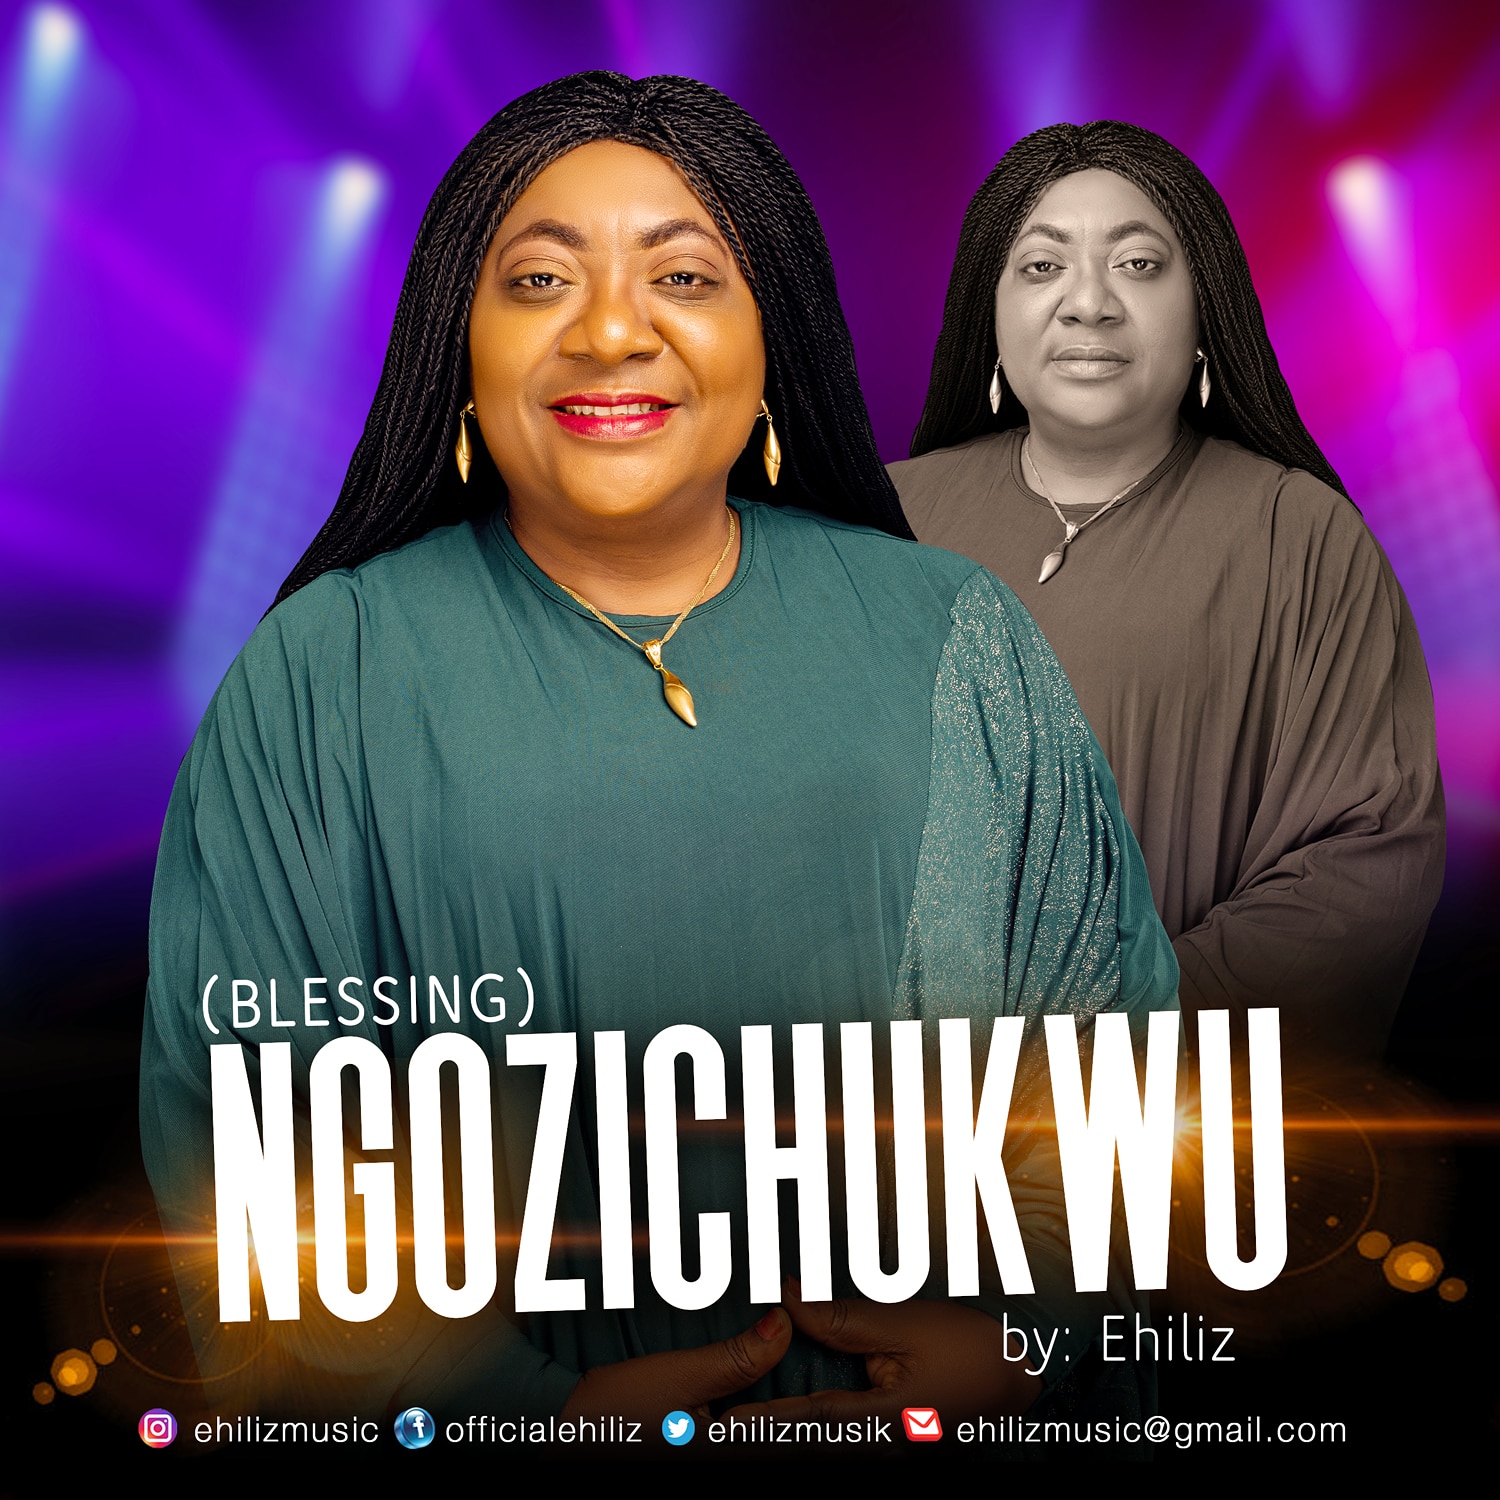 Download Ehiliz Ngozichukwu (Blessing) mp3